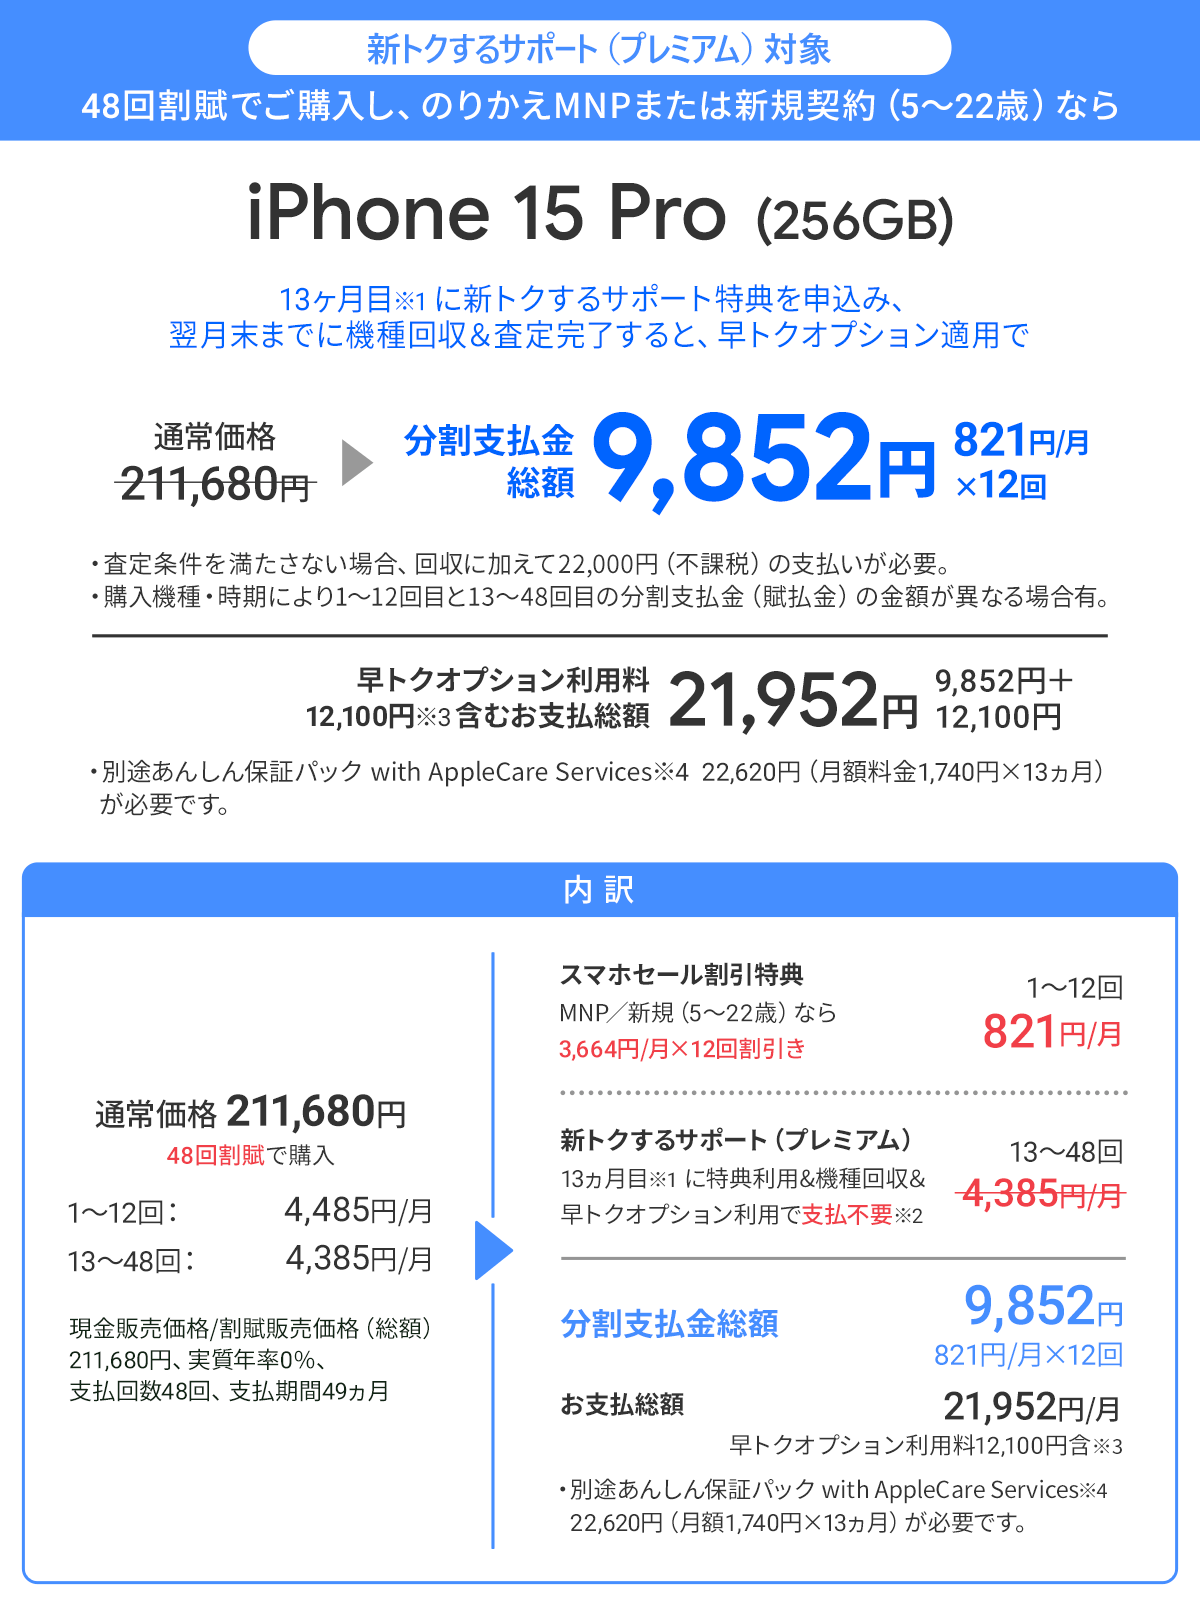 ソフトバンク「iPhone 15 Pro 256GB」が割引き！スマホセール